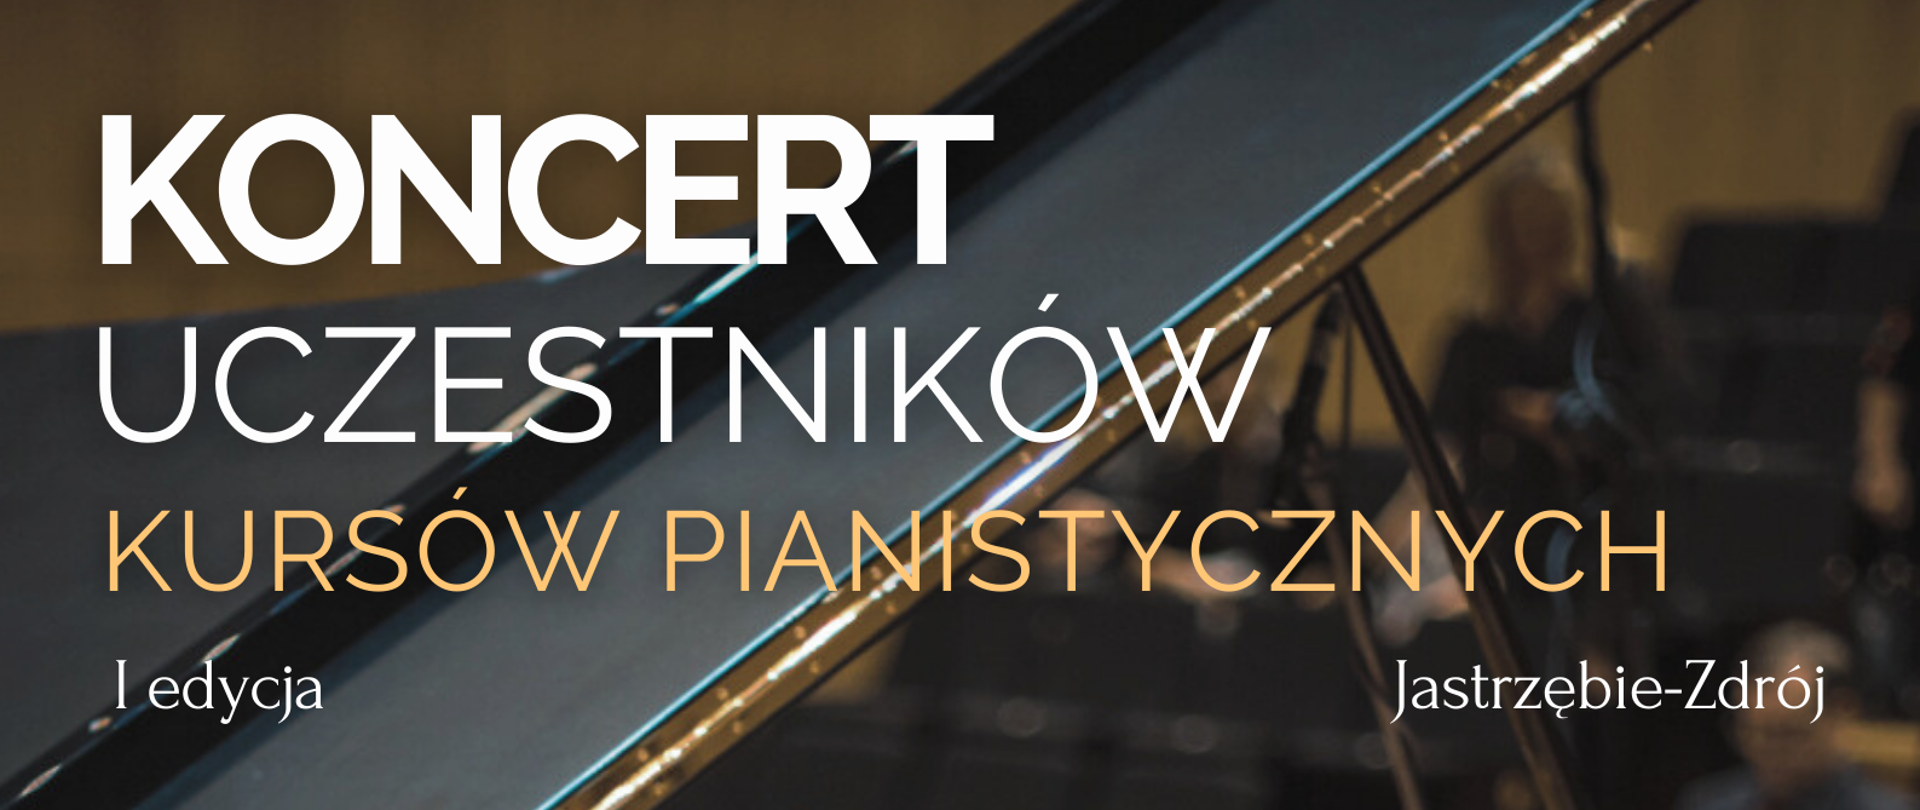 Plakat informujący - Koncert uczestników warsztatów fortepianowych 4 maja 16.00